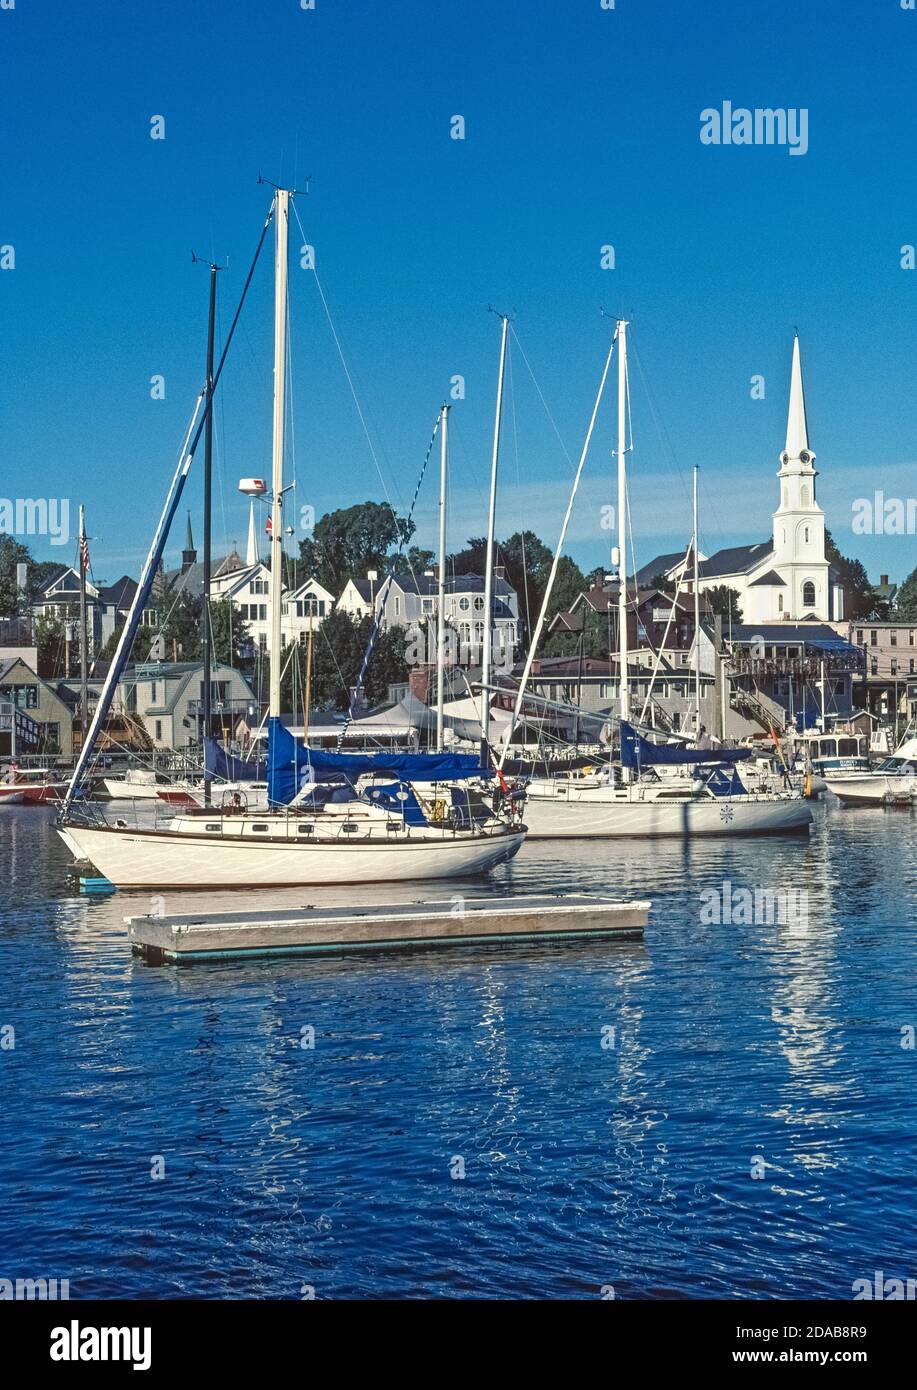 Der charmante Küstenhafen von Camden, Maine, USA, ist die ikonische Stadt New England mit seiner weißen Kirchtürmkirche und einem Hafen voller moderner und klassischer Segelboote. Dazu gehören historische Schoner, die Segeltörns in Penobscot Bay und entlang der nordöstlichen Küste am Atlantischen Ozean anbieten. Stockfoto